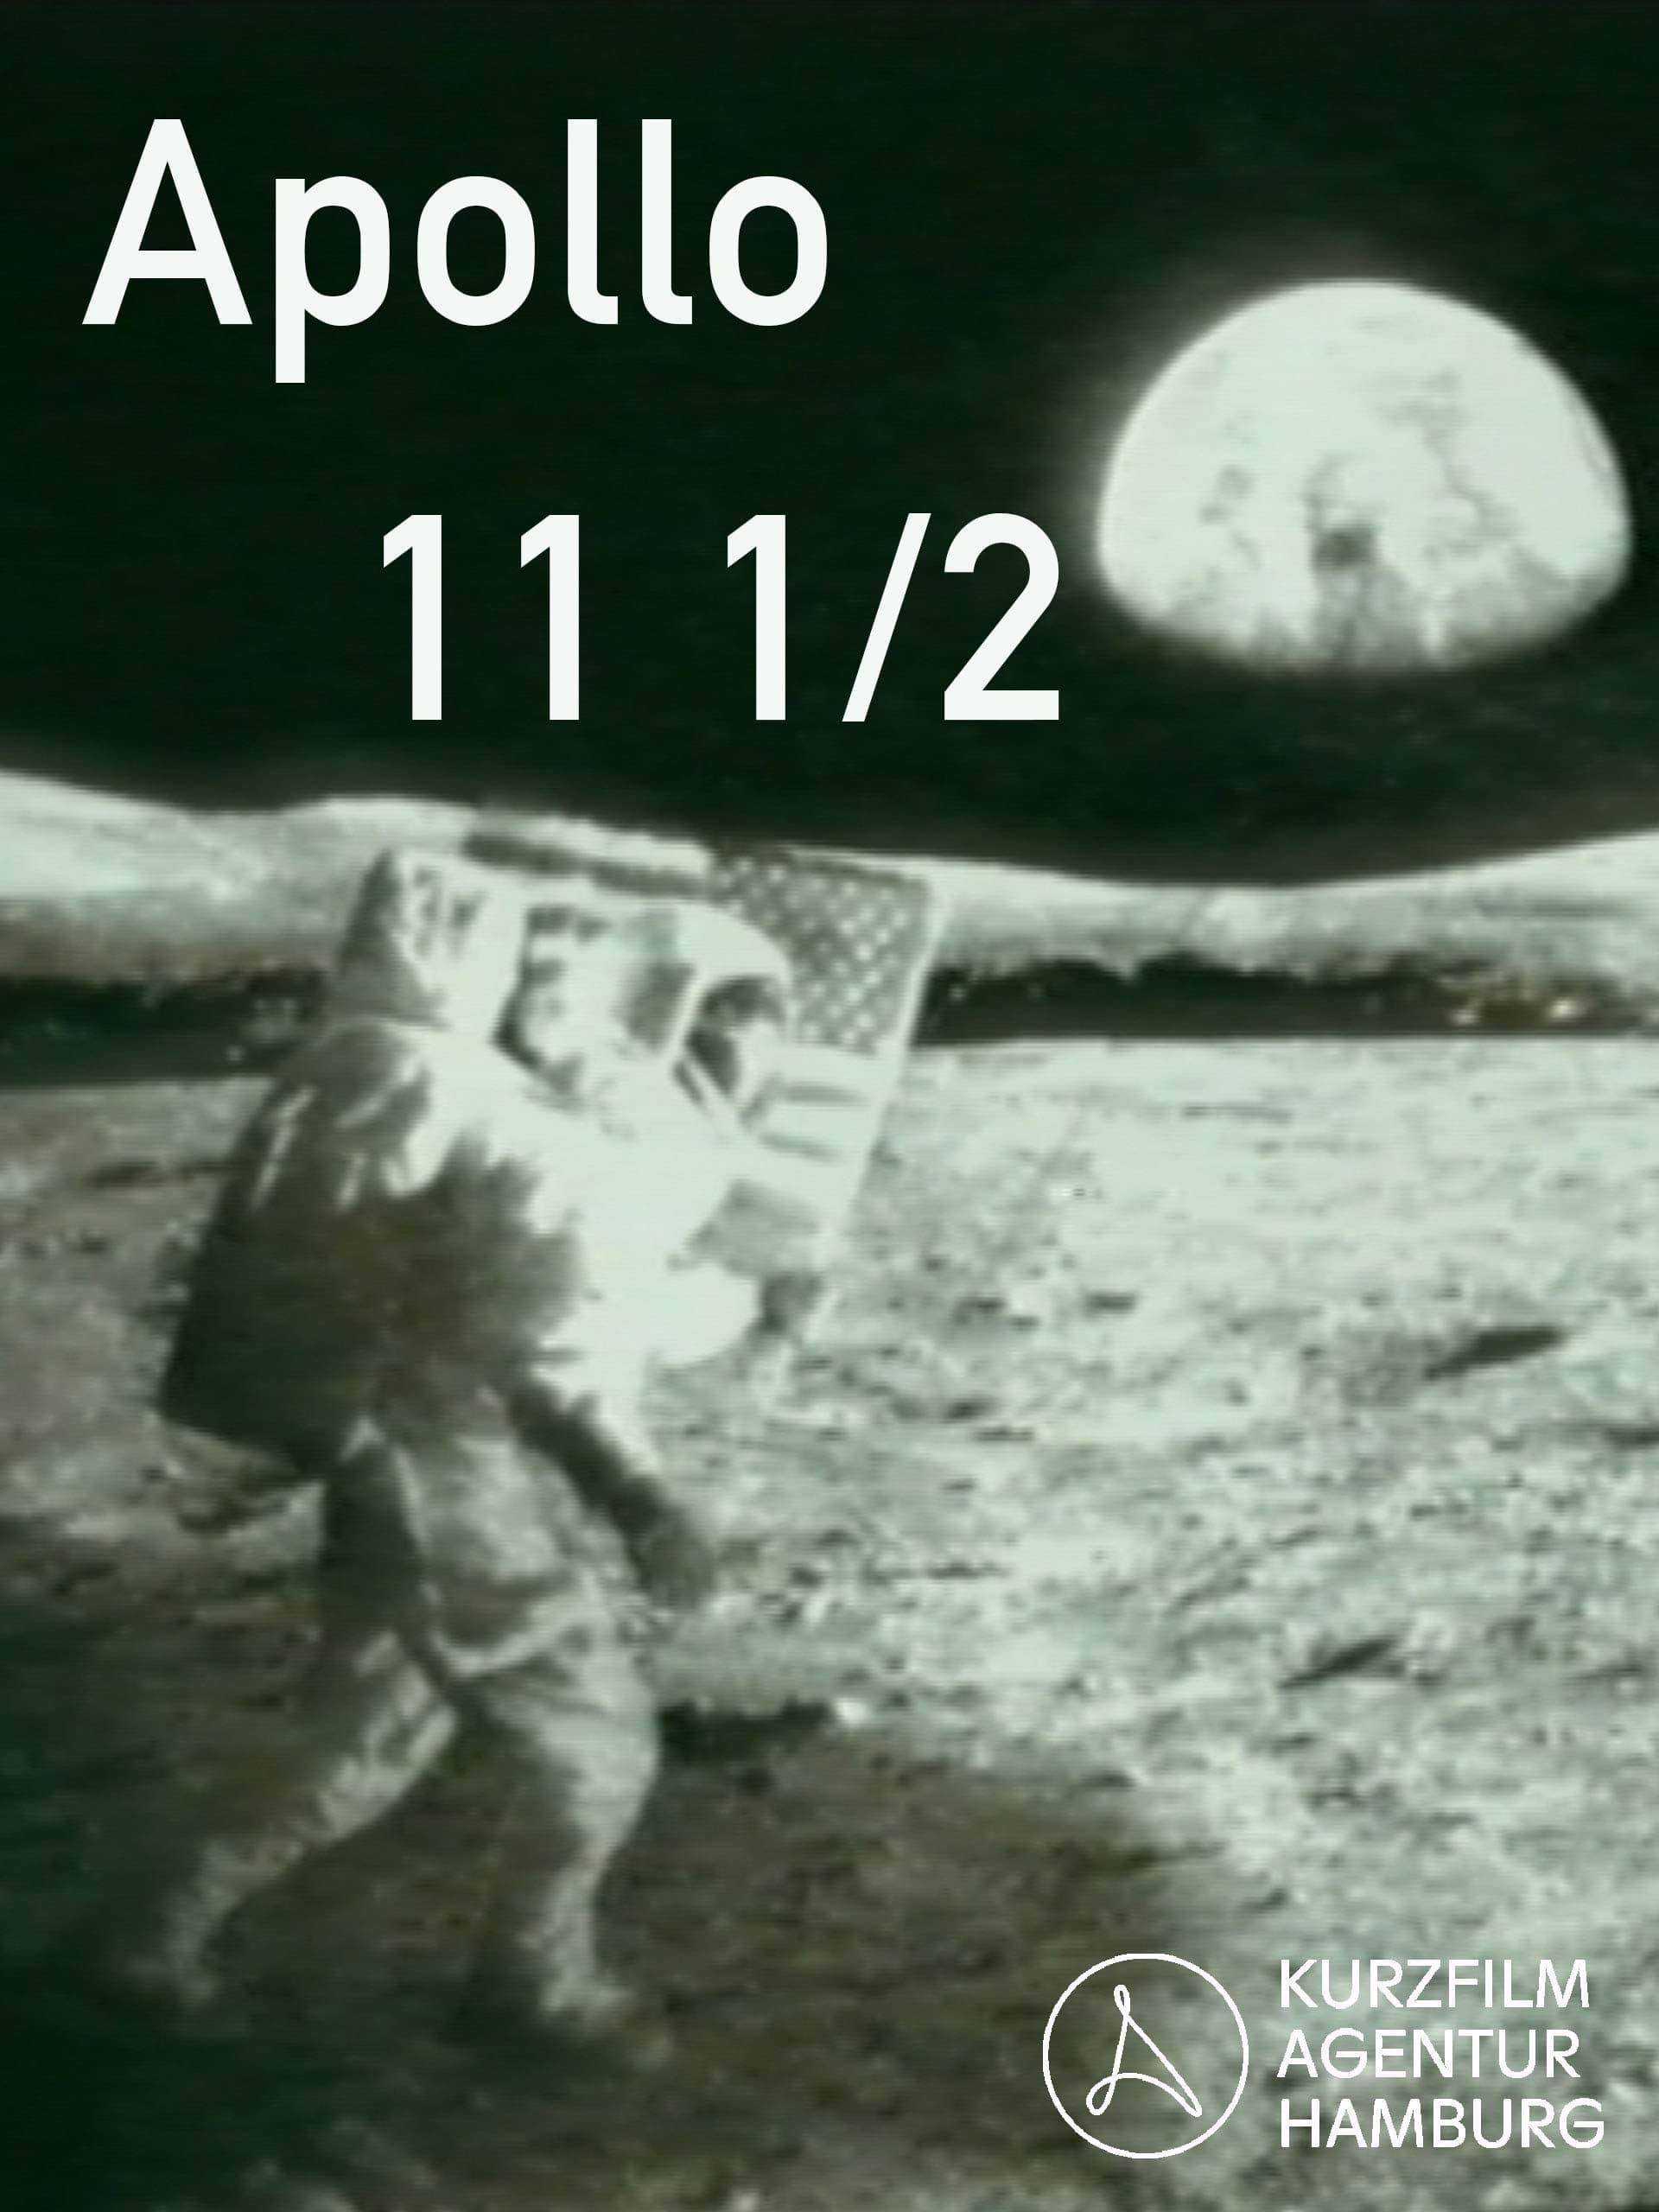 Apollo 11 ½